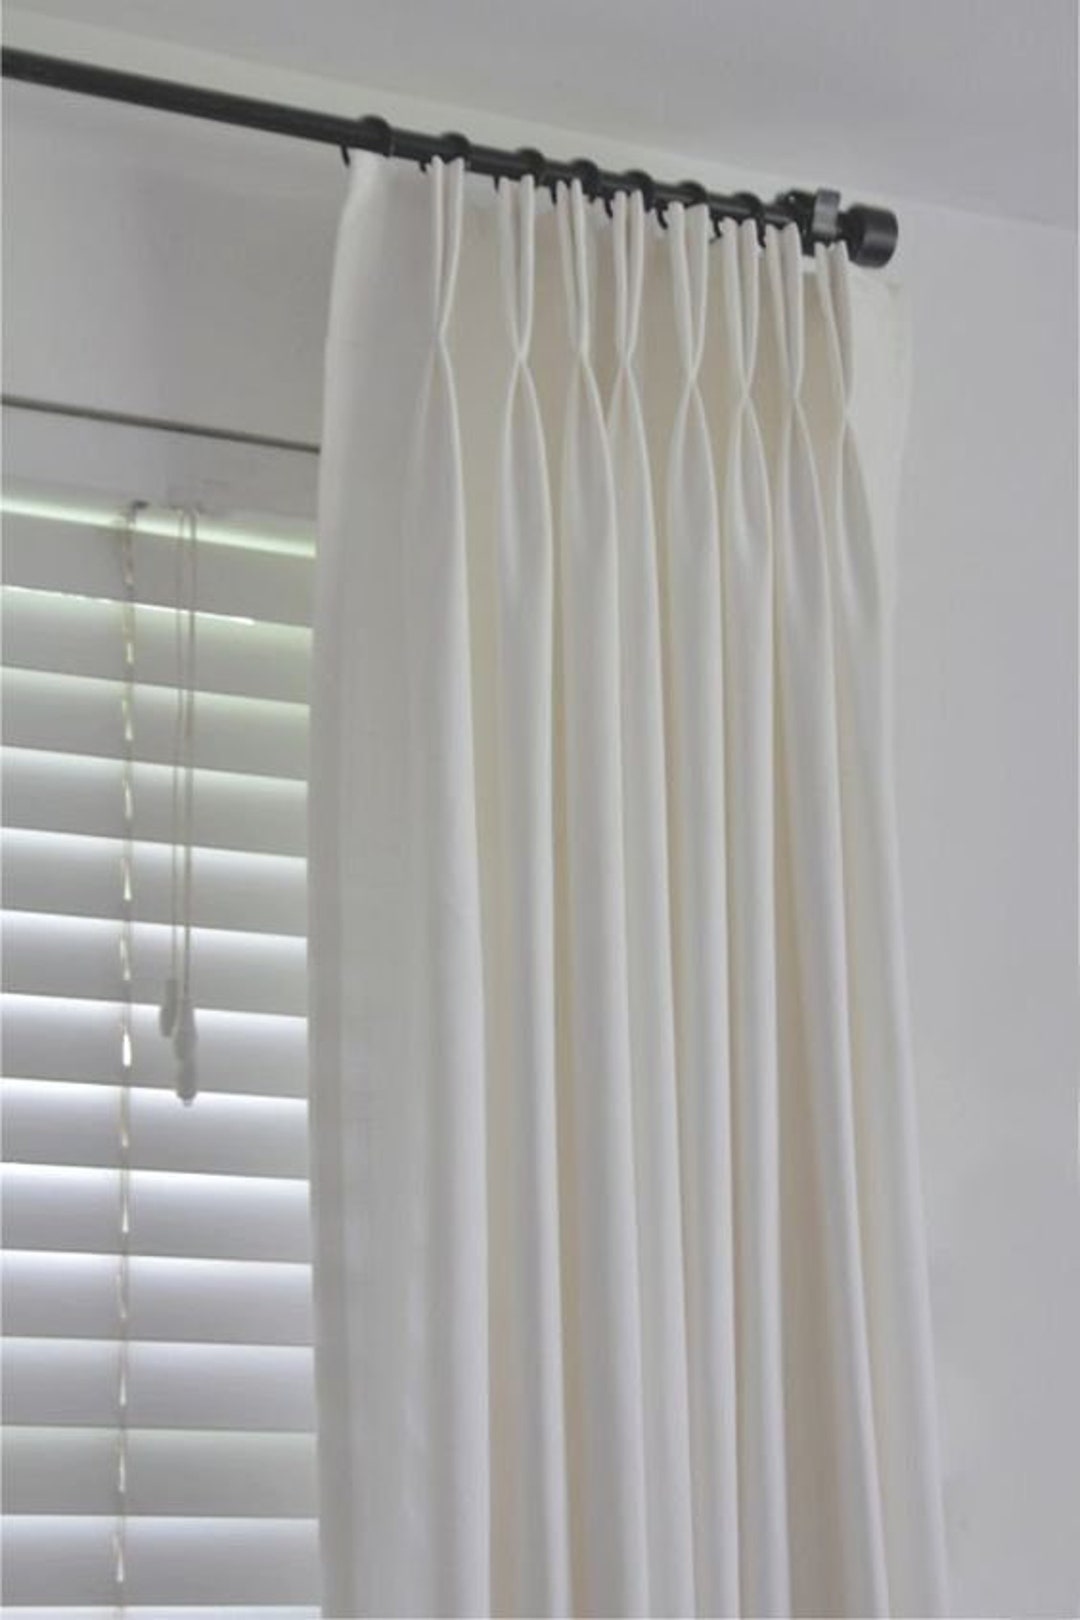 Agregue pliegues de pellizco, pliegues franceses, ojales, cinta adhesiva  con cuentas o estilo de pliegue ondulado a los paneles de cortinas -   México